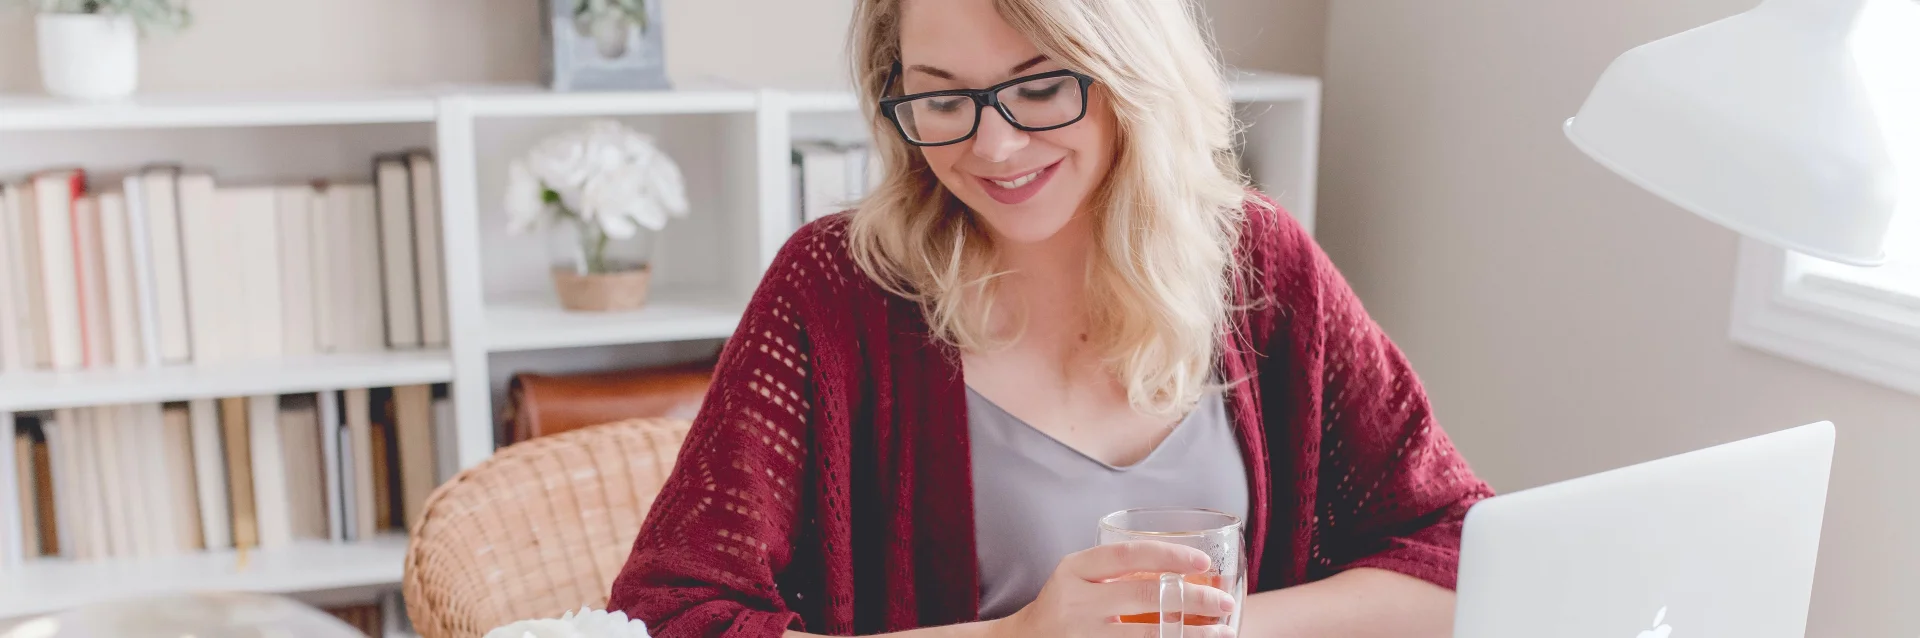 Lächelnde blonde Frau in einem Büro mit einem heißen Getränk in der Hand.